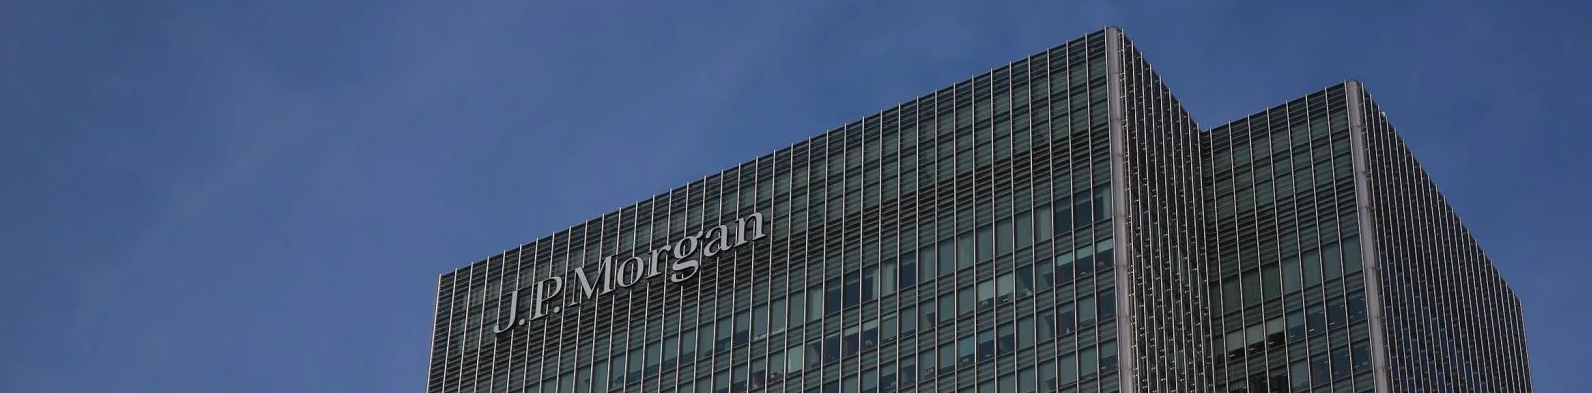 JP Morgan HQ